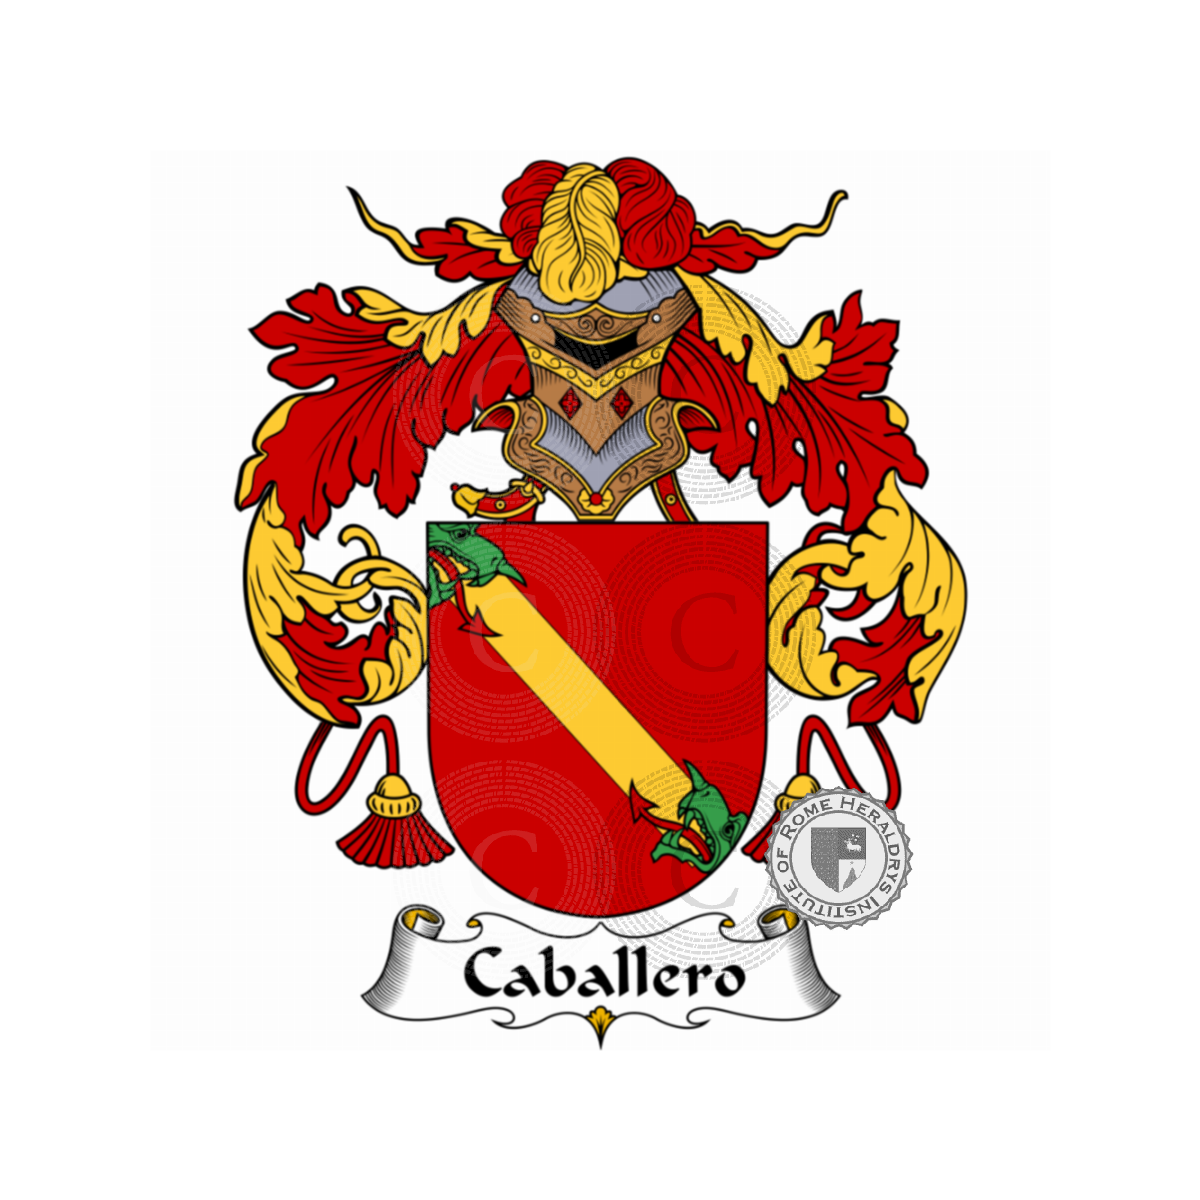 Wappen der FamilieCaballero, Caballeros